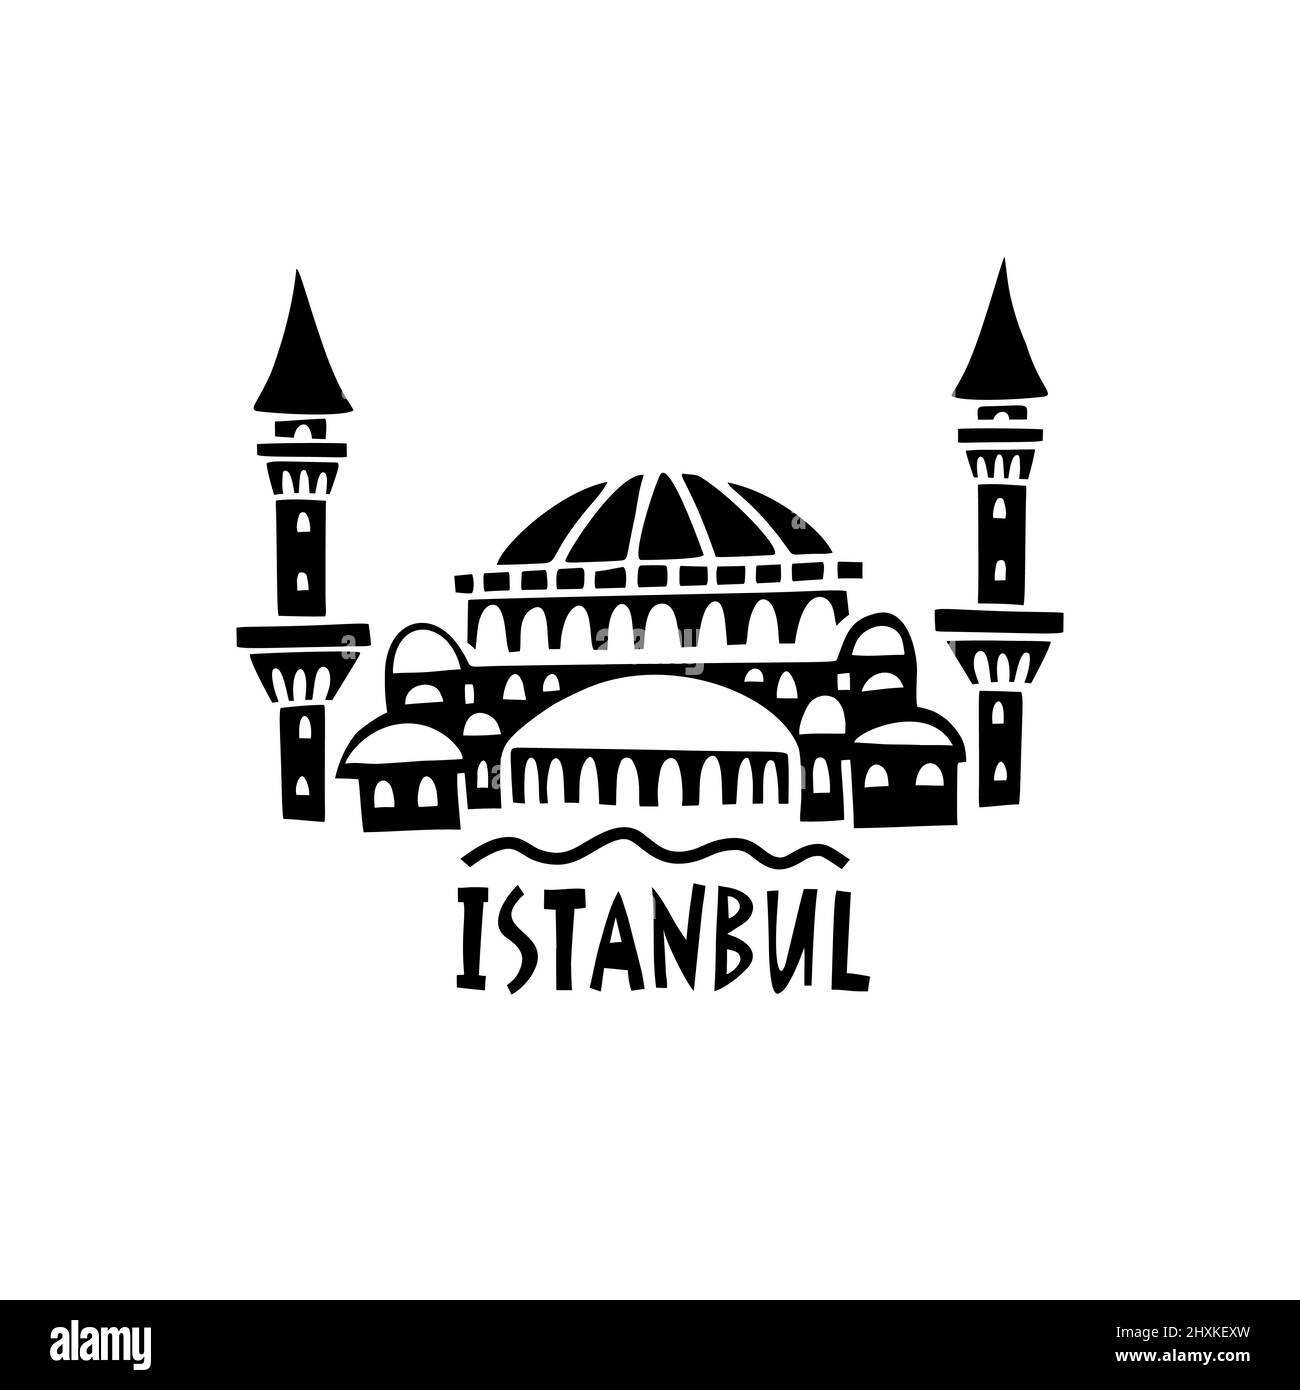 Vettore simbolo disegnato a mano di Istanbul. Illustrazione di viaggio della Repubblica di Turchia. Illustrazione scritta disegnata a mano. Logo simbolo turco Illustrazione Vettoriale